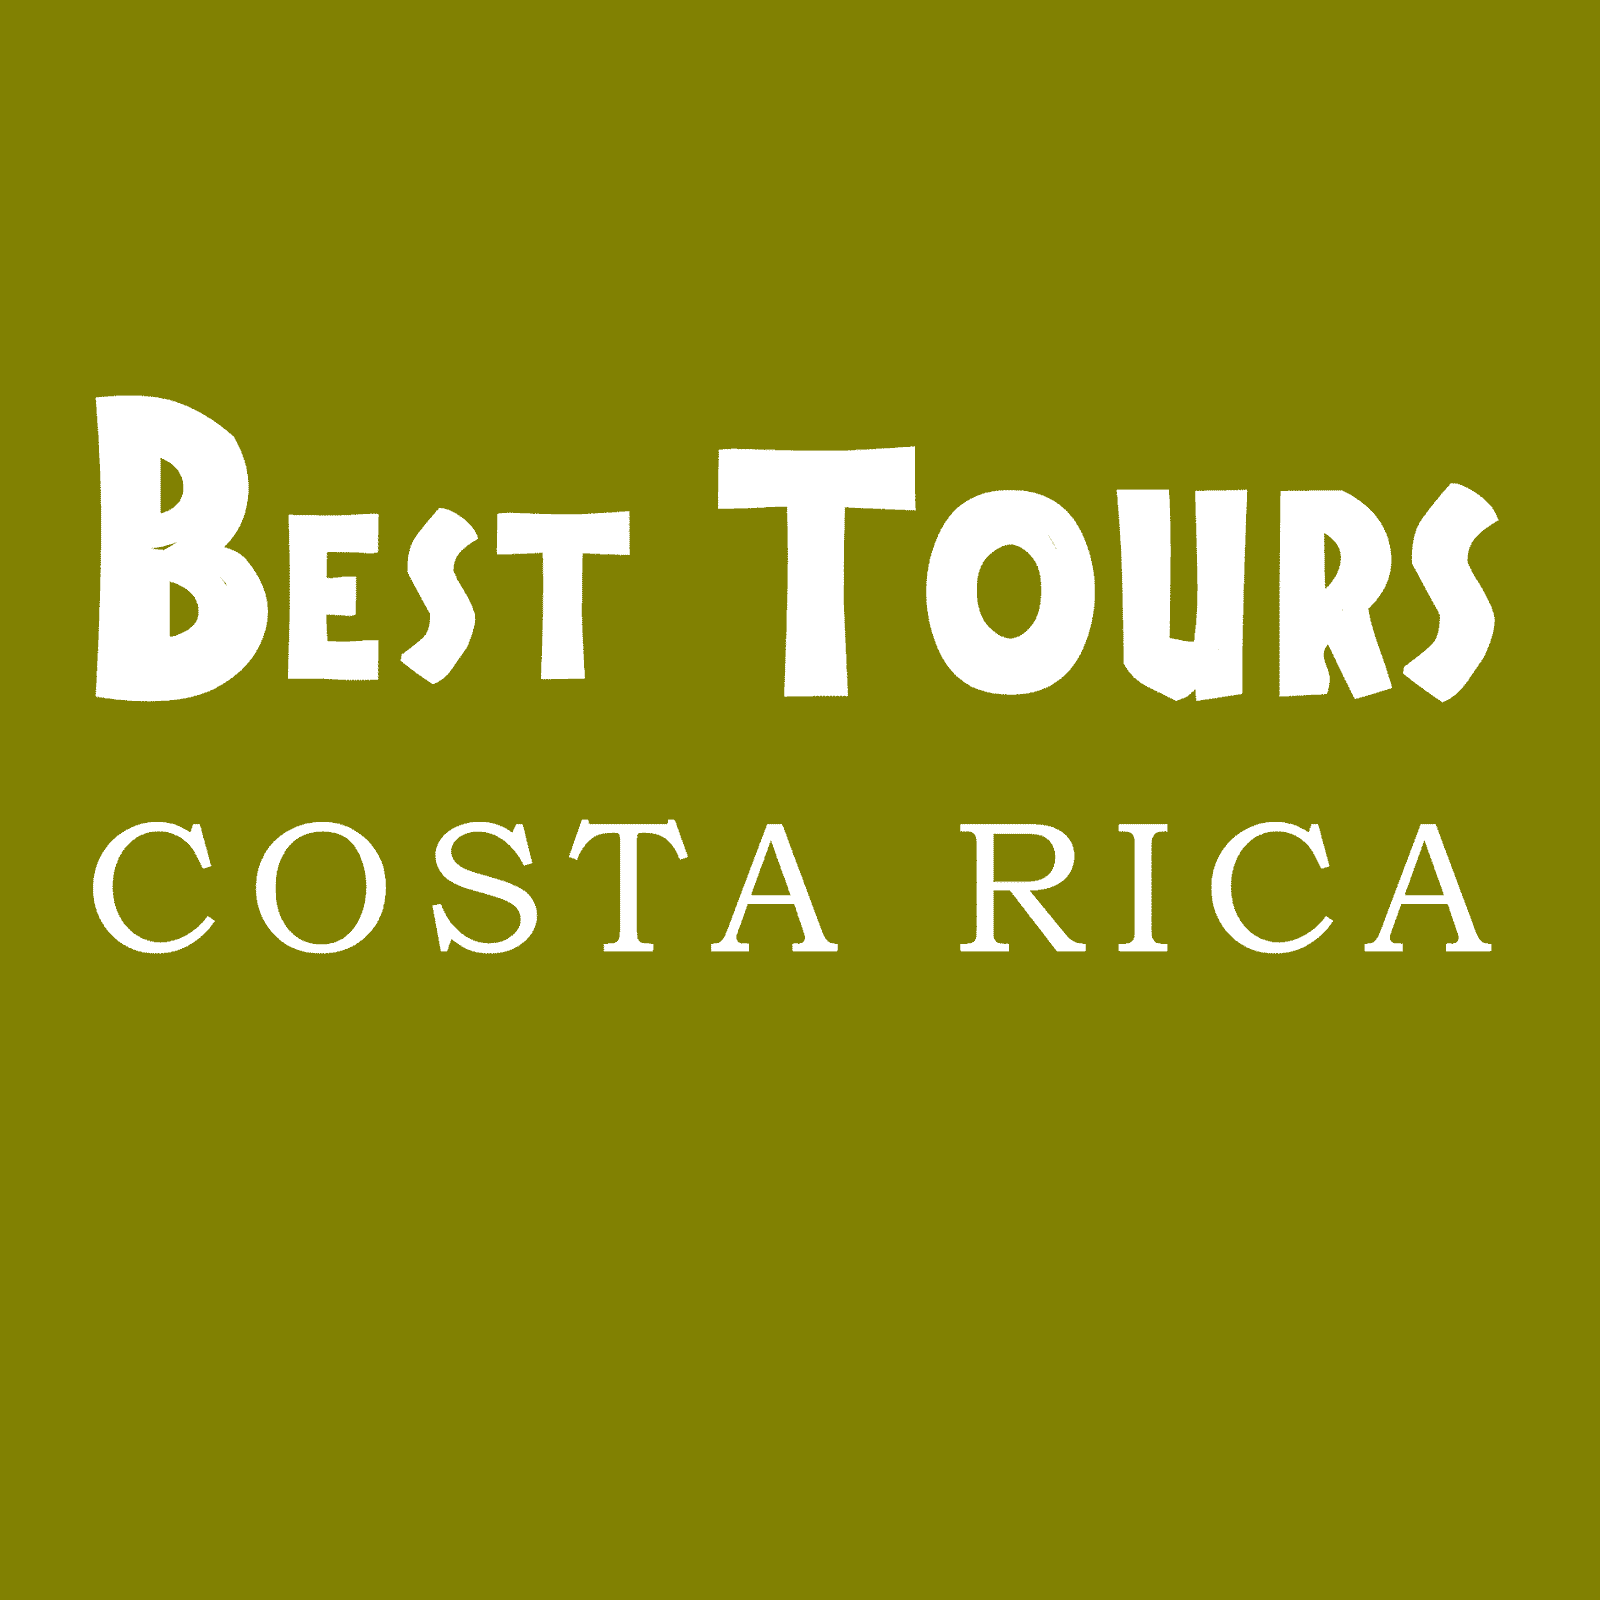 Best Tours Costa Rica Olive White FAVICON